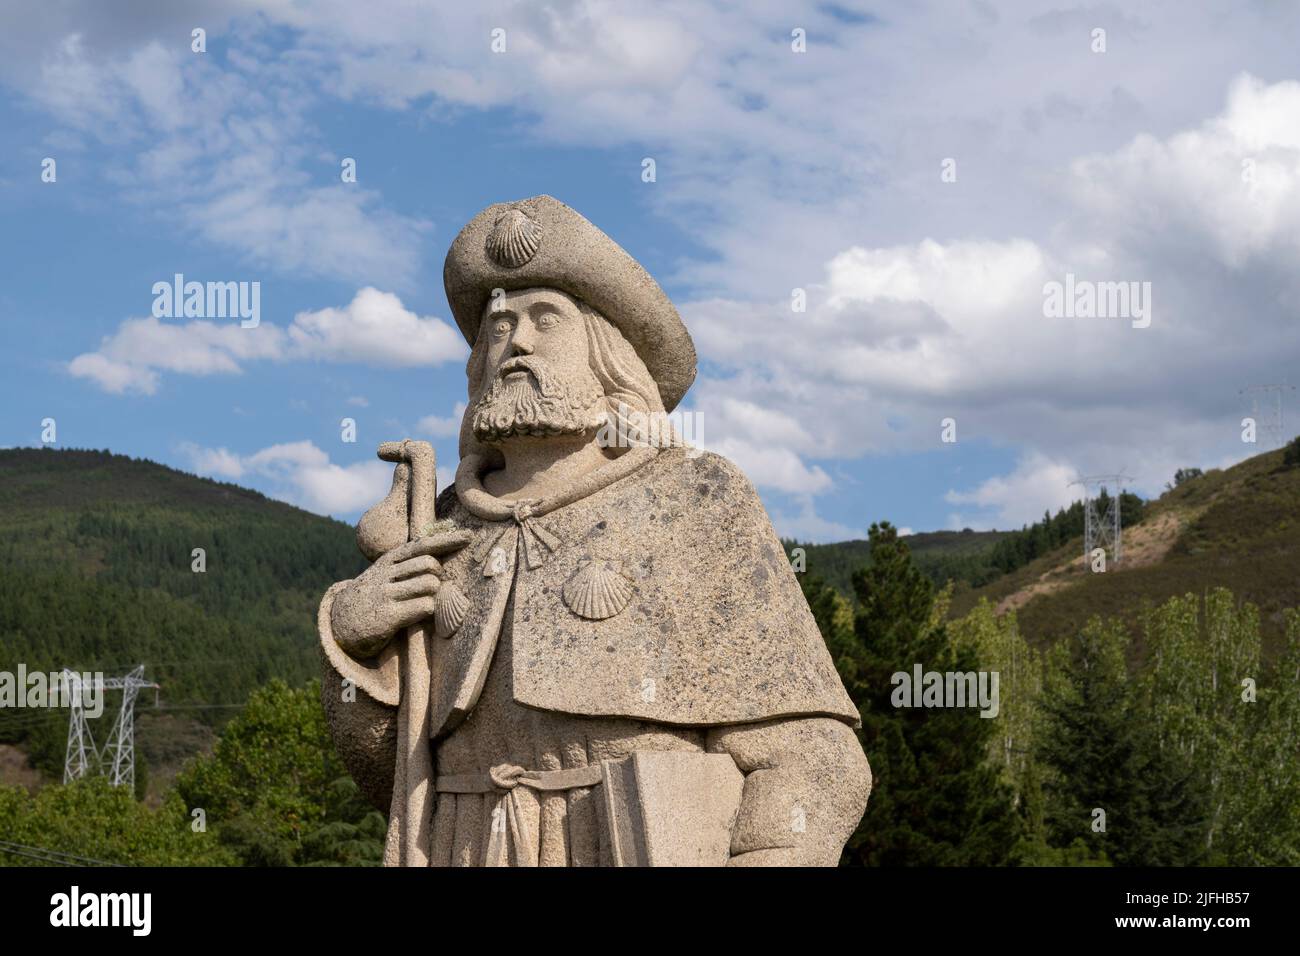 Estatua de Santiago Peregrino (San Jaime el Grande como peregrino) mostrada con la capa habitual, conchas de vieiras, bastón y calabaza a lo largo del Camino Frances in Foto de stock